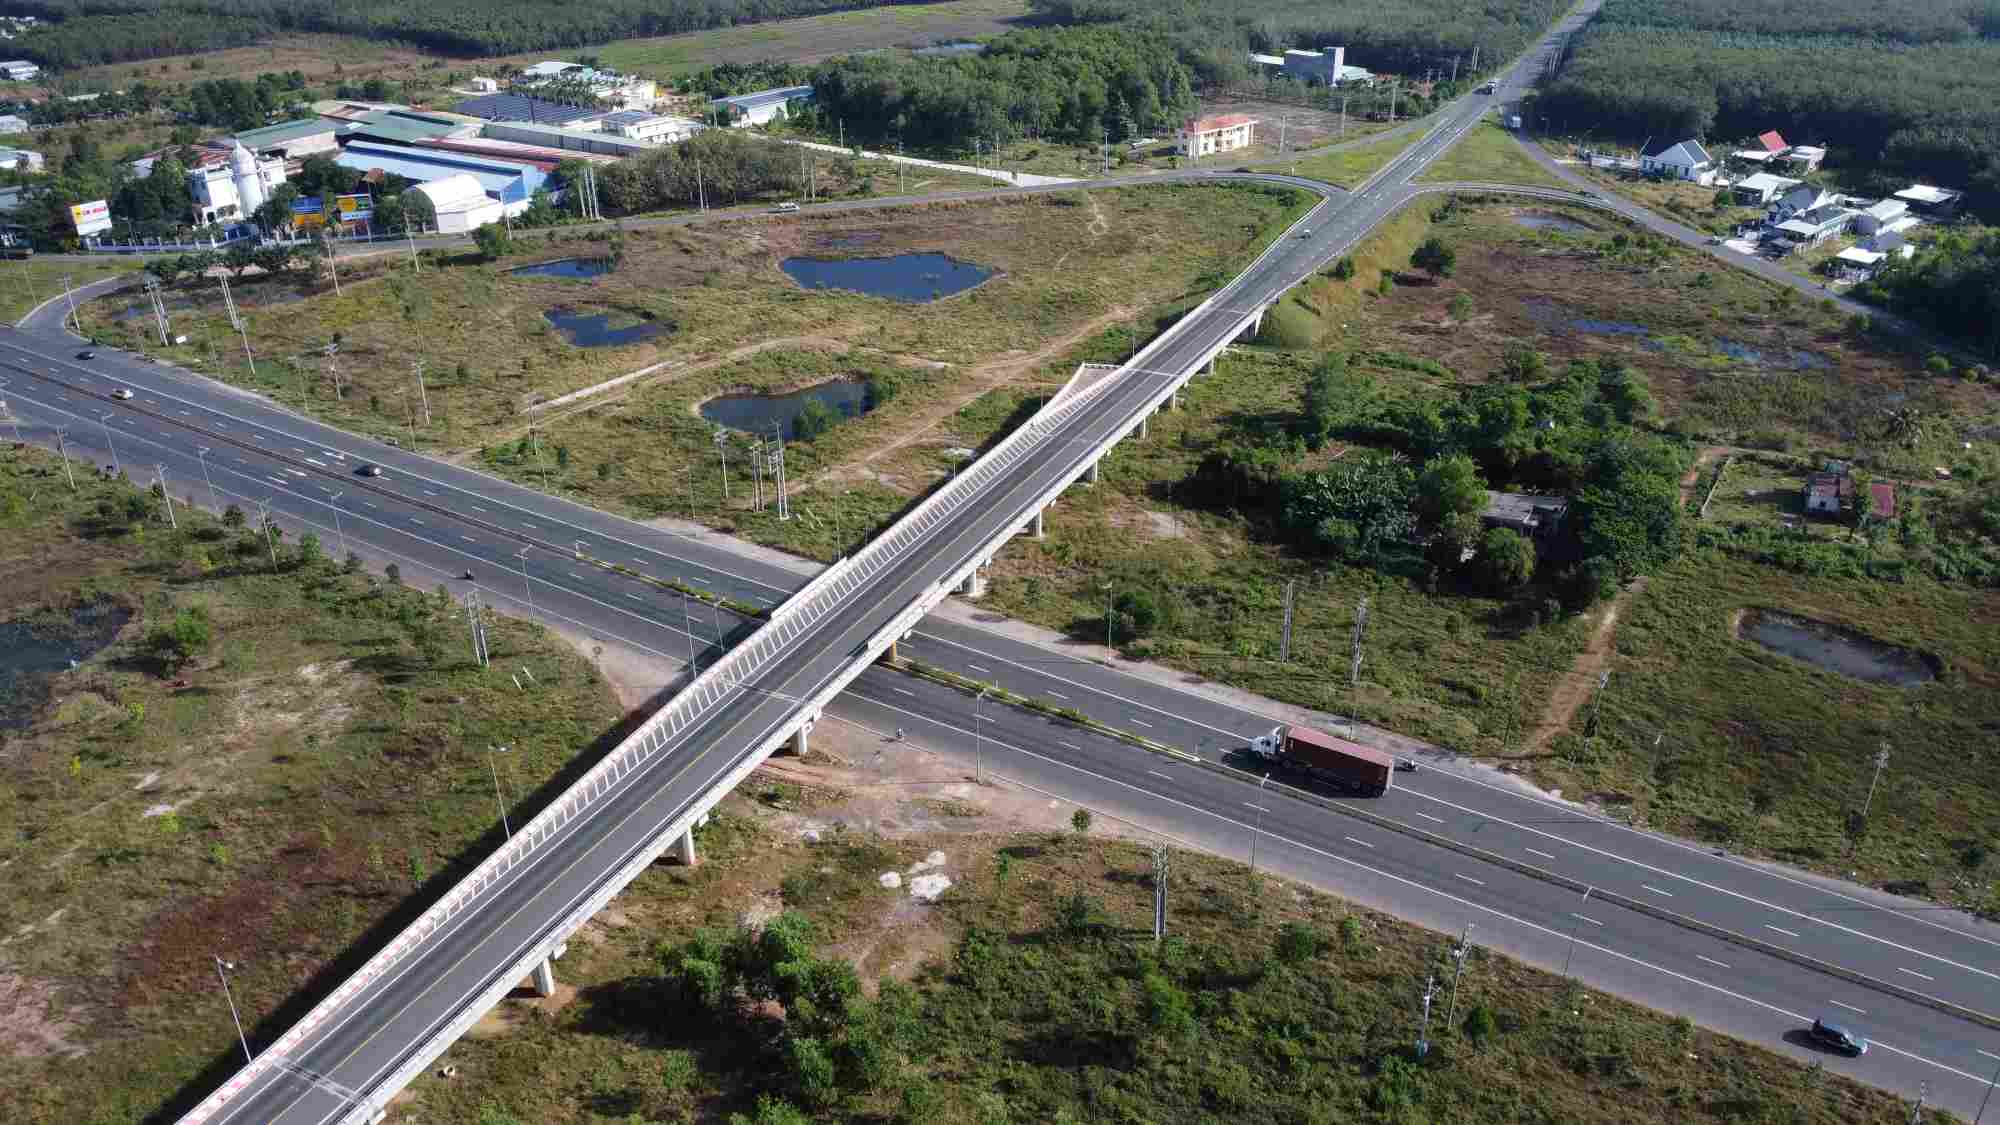 Đây là điểm quốc lộ 14 giao nhau với quốc lộ 13 - điểm cuối của quốc lộ 14 qua địa bàn tỉnh Bình Phước.